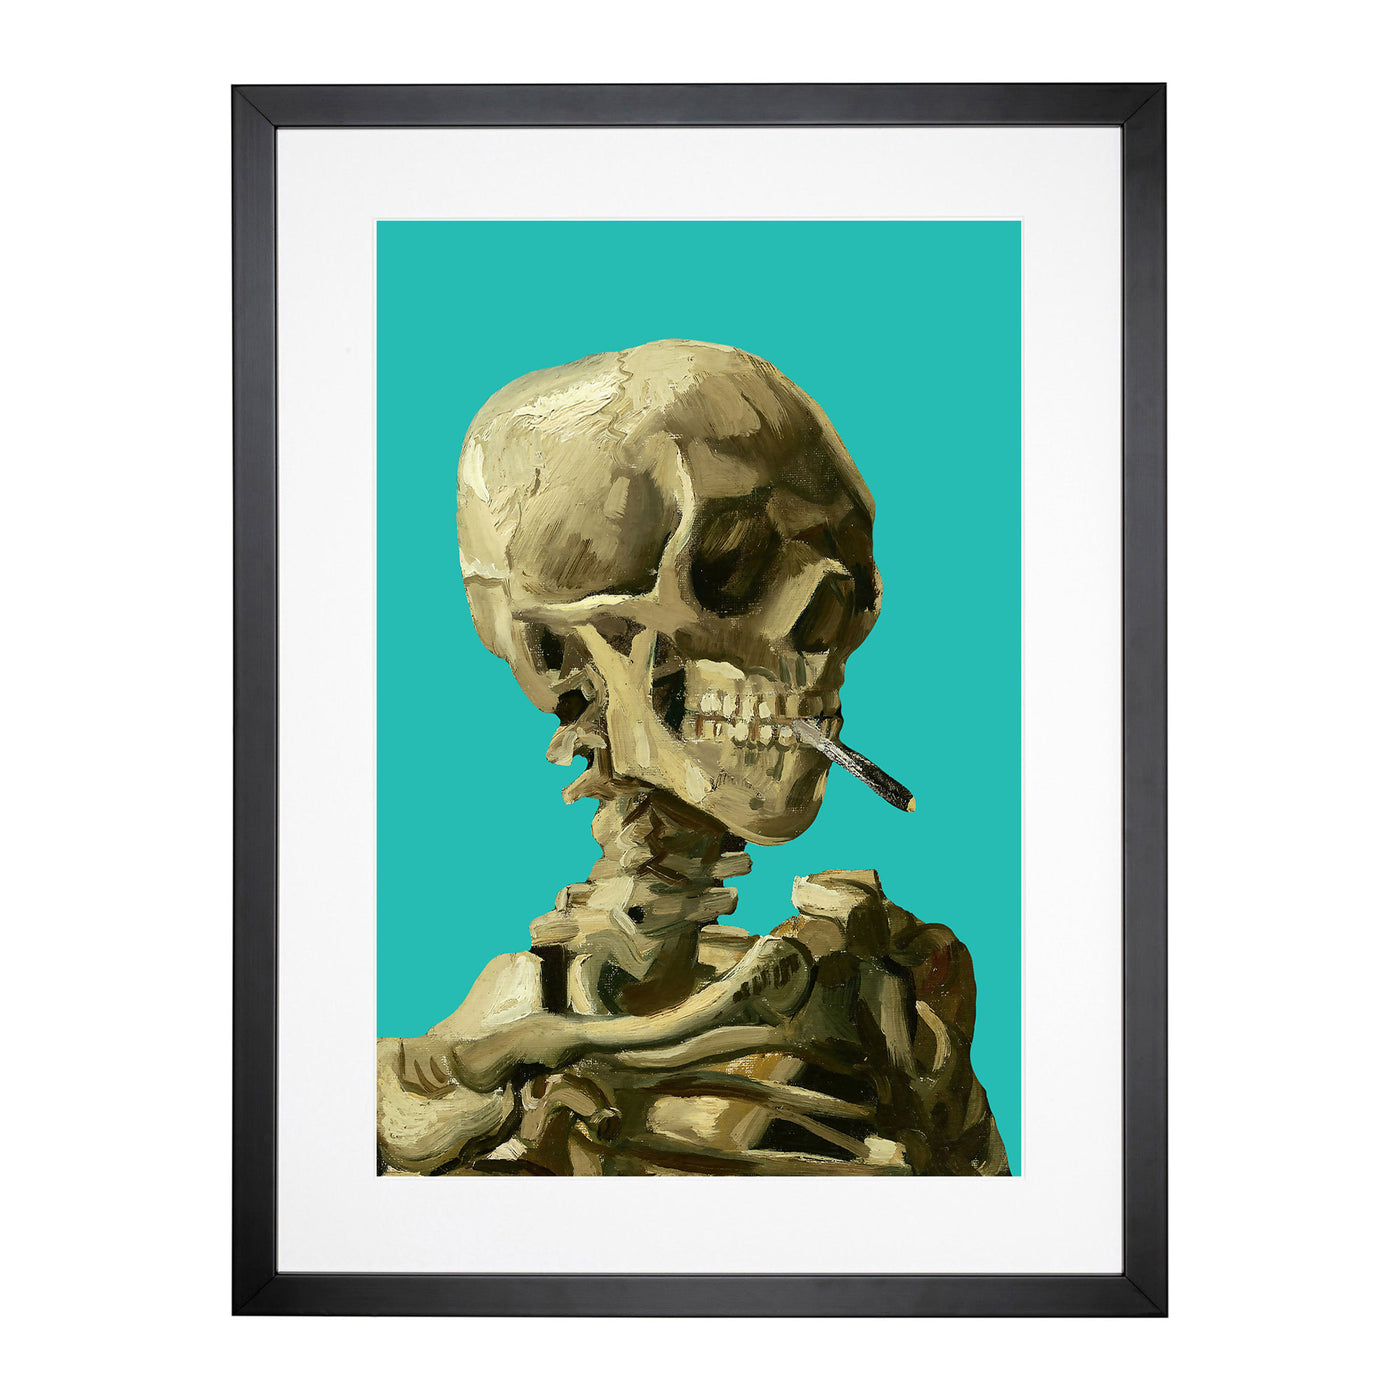 Teal Skull Of A Skeleton With Cigarette By Vincent Van Gogh Framed Print Main Image